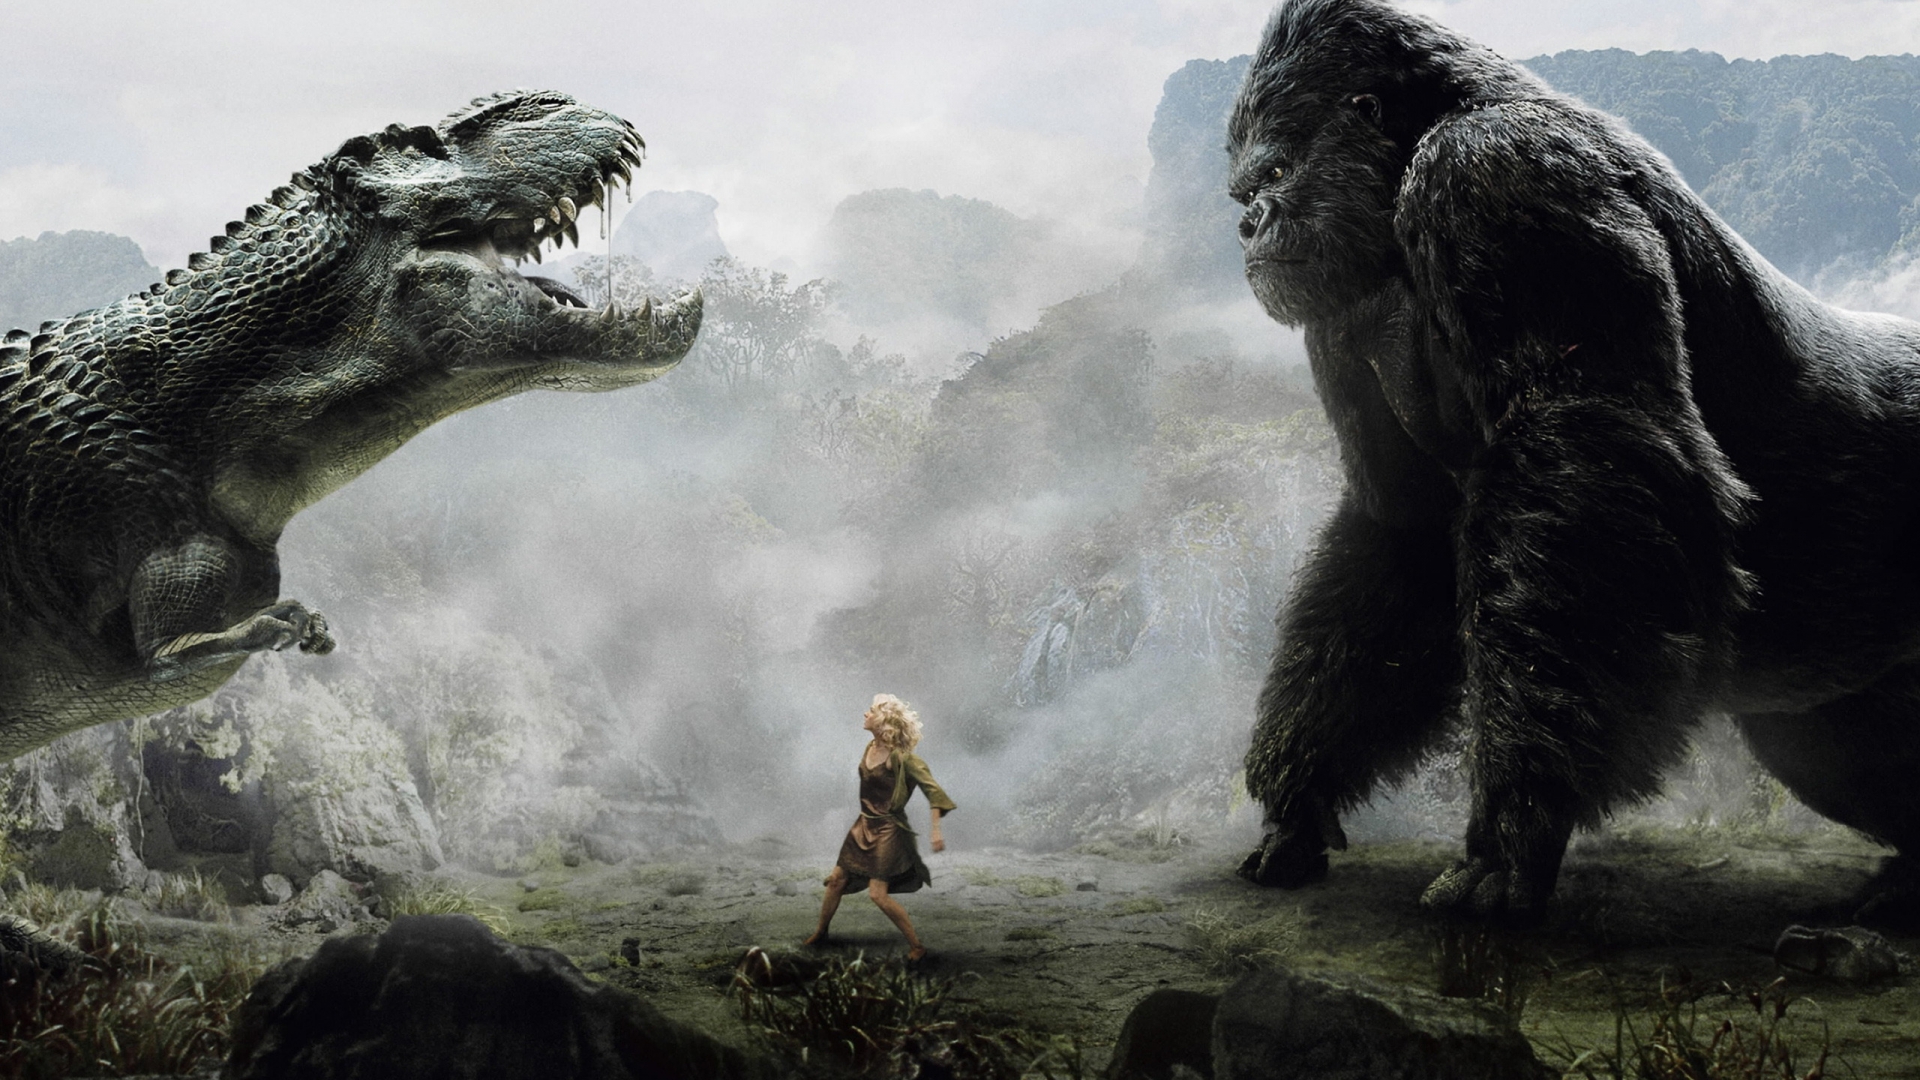 King Kong vs Dinosaur for 1920 x 1080 HDTV 1080p resolution